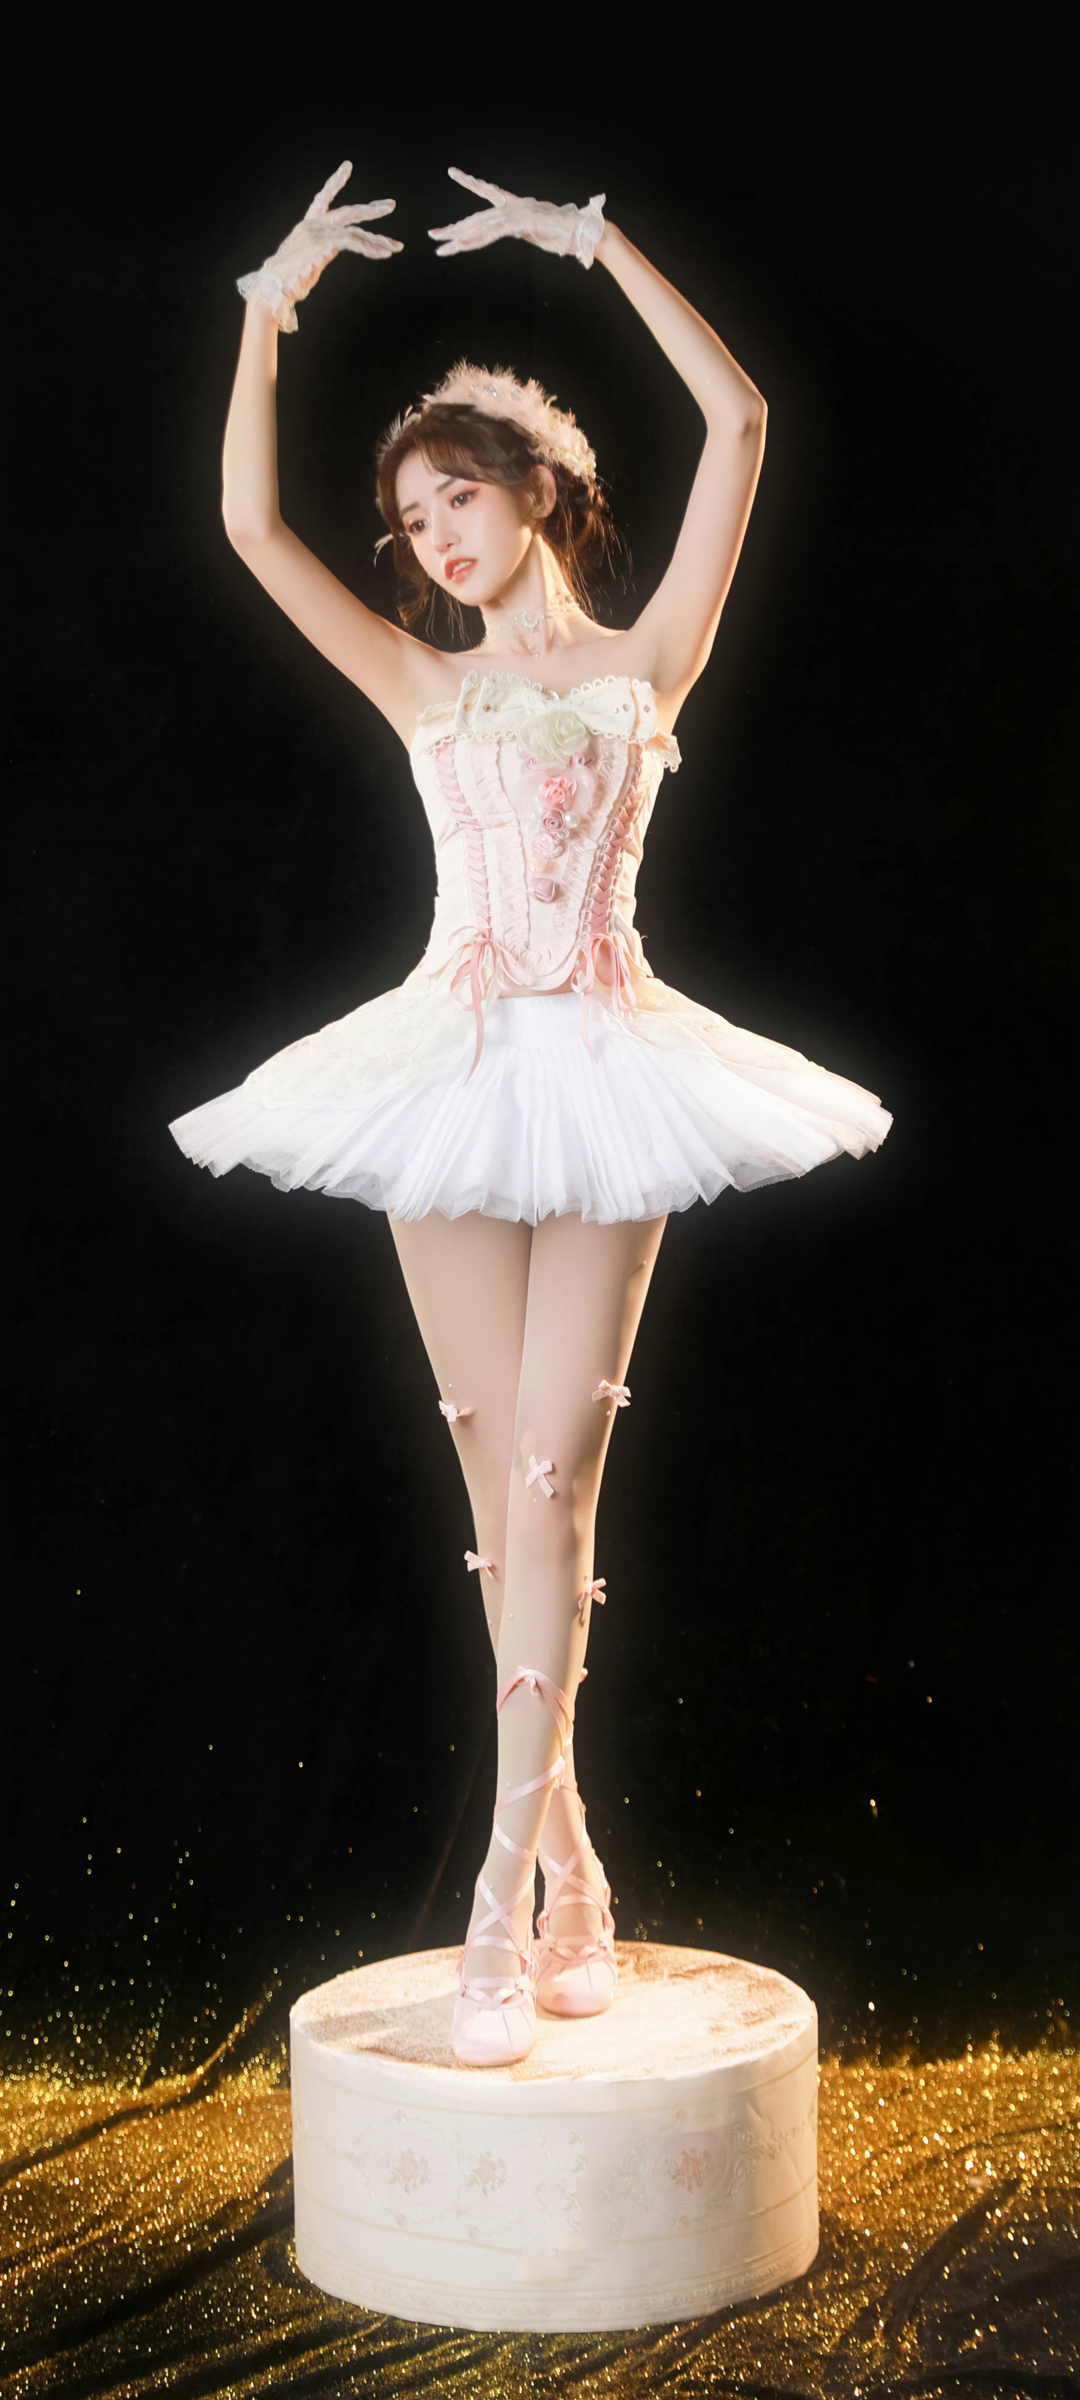 好看身材美腿美女 唯美 芭蕾舞 手机壁纸图片